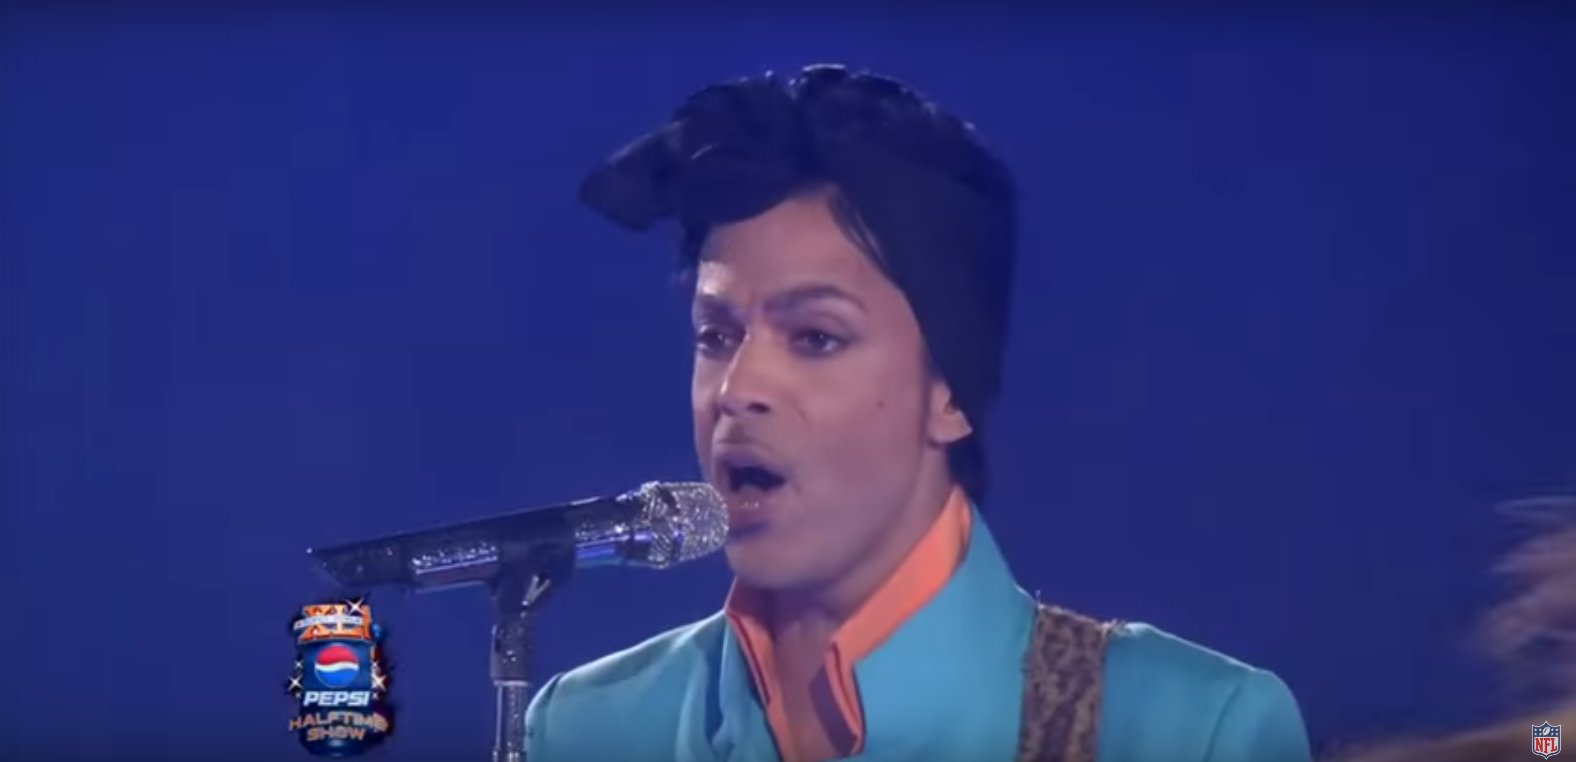 Prince nie żyje. Zmarł jeden z największych bojowników o prawo autorskie, nie zawsze w słusznej sprawie